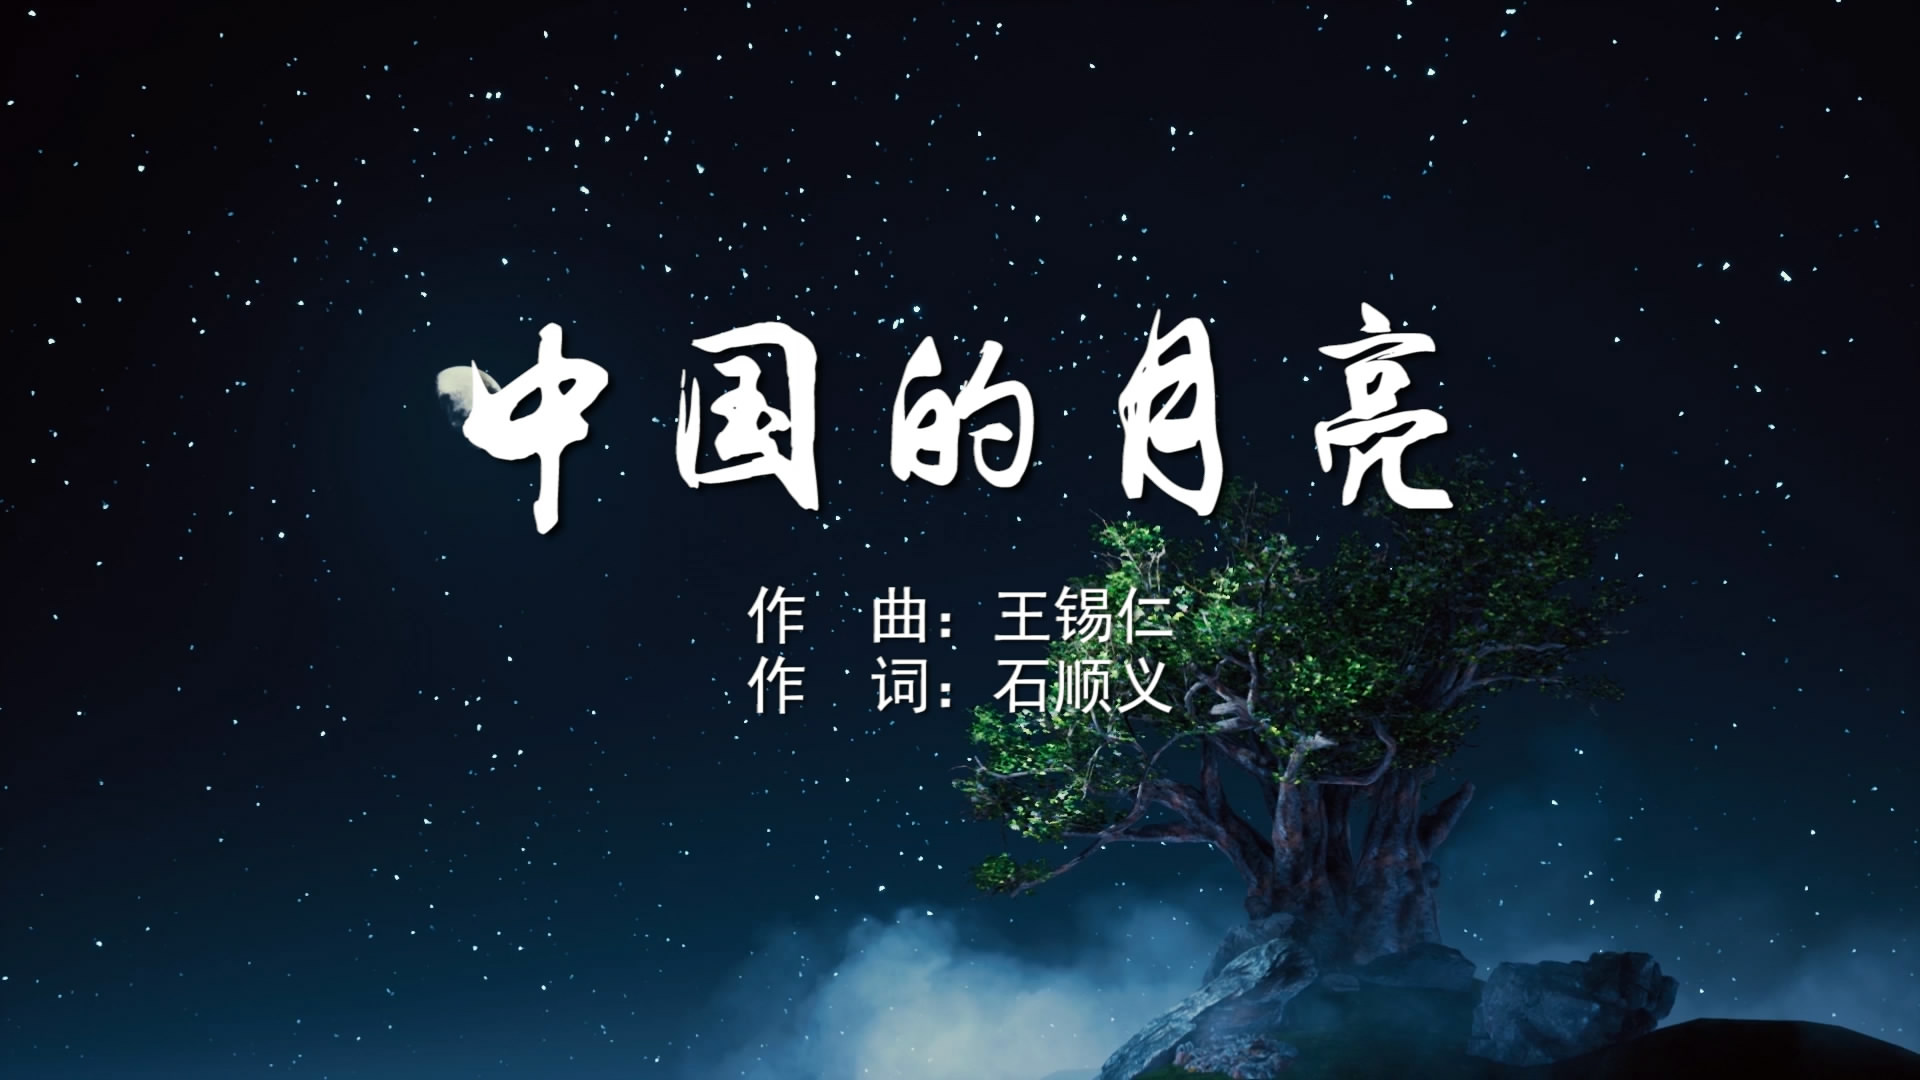 中国的月亮 叶毛、廖莎MV字幕配乐伴奏舞台演出LED背景大屏幕视频素材TV